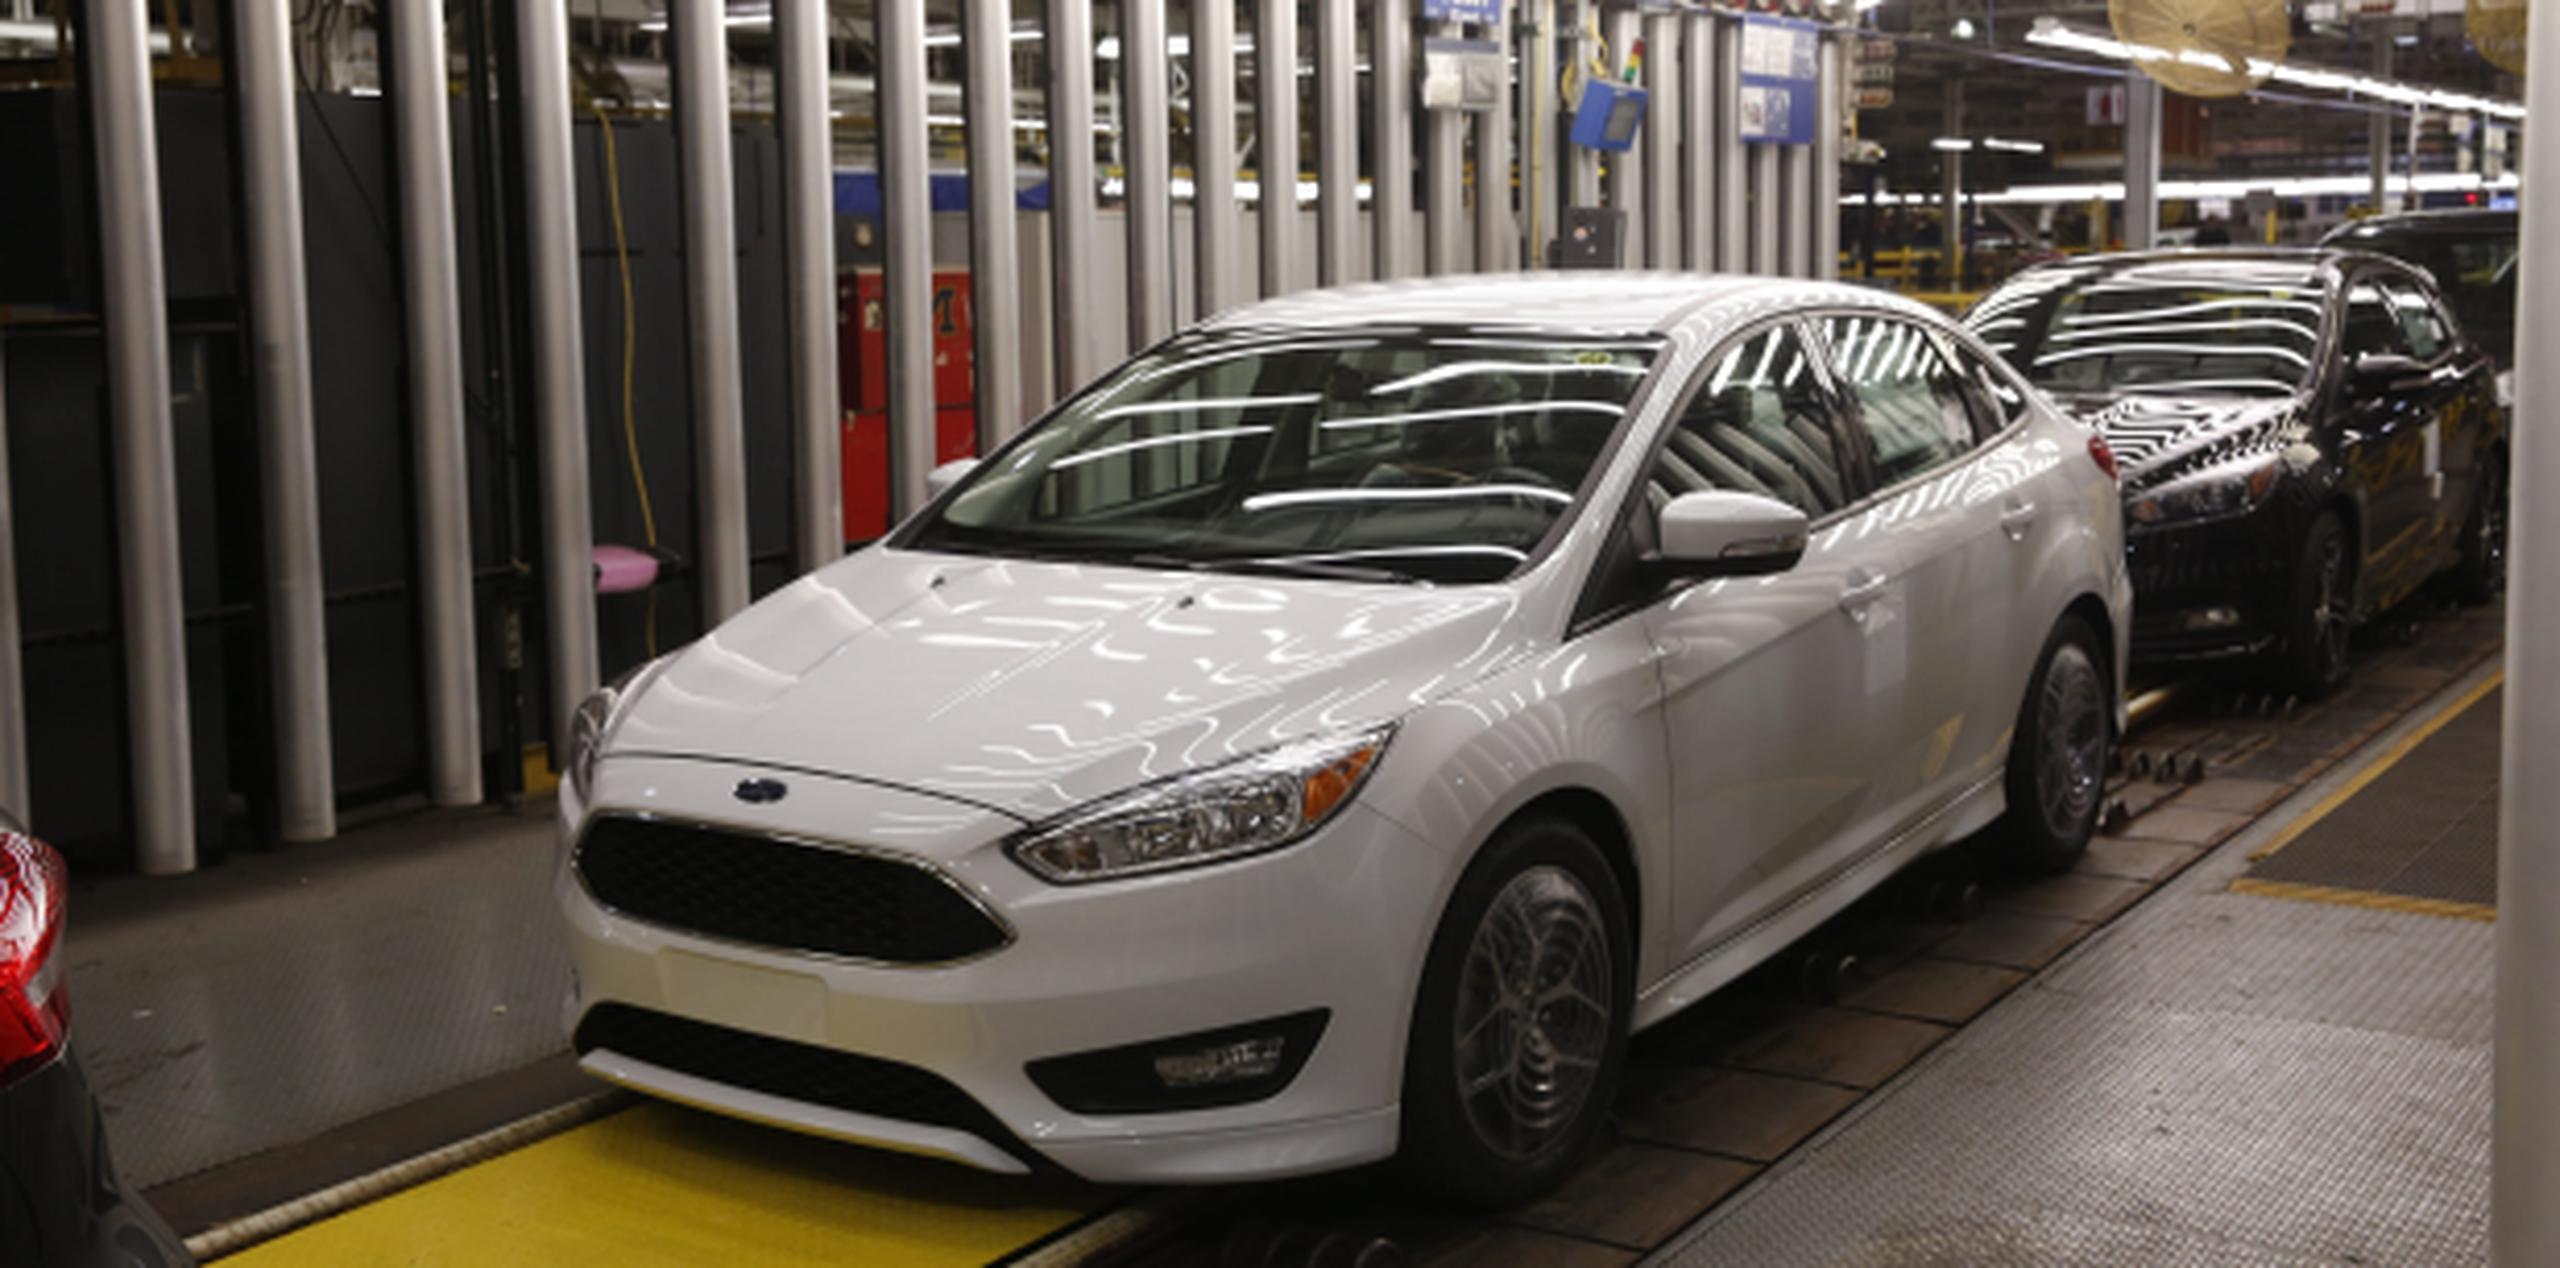 Ford dejará de producir el modelo Focus en su planta en las cercanías de Detroit, pero anunció que estaría produciendo allí otros dos modelos. (Archivo)